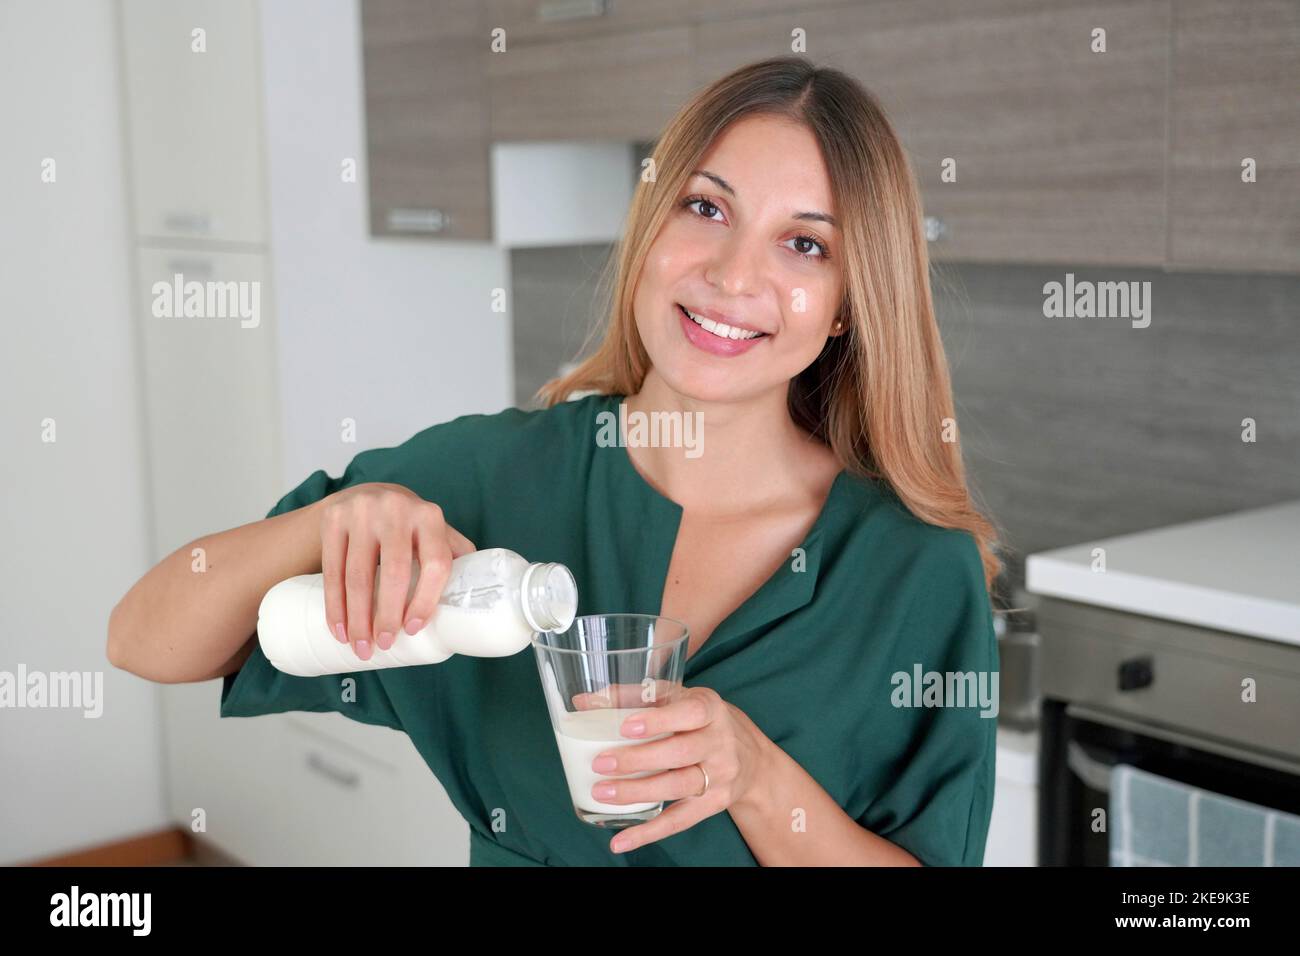 Morning Portrait der jungen lächelnden Frau füllt das Glas mit Kefir. Schönes Mädchen, das Milch trinkt. Schaut auf die Kamera. Stockfoto